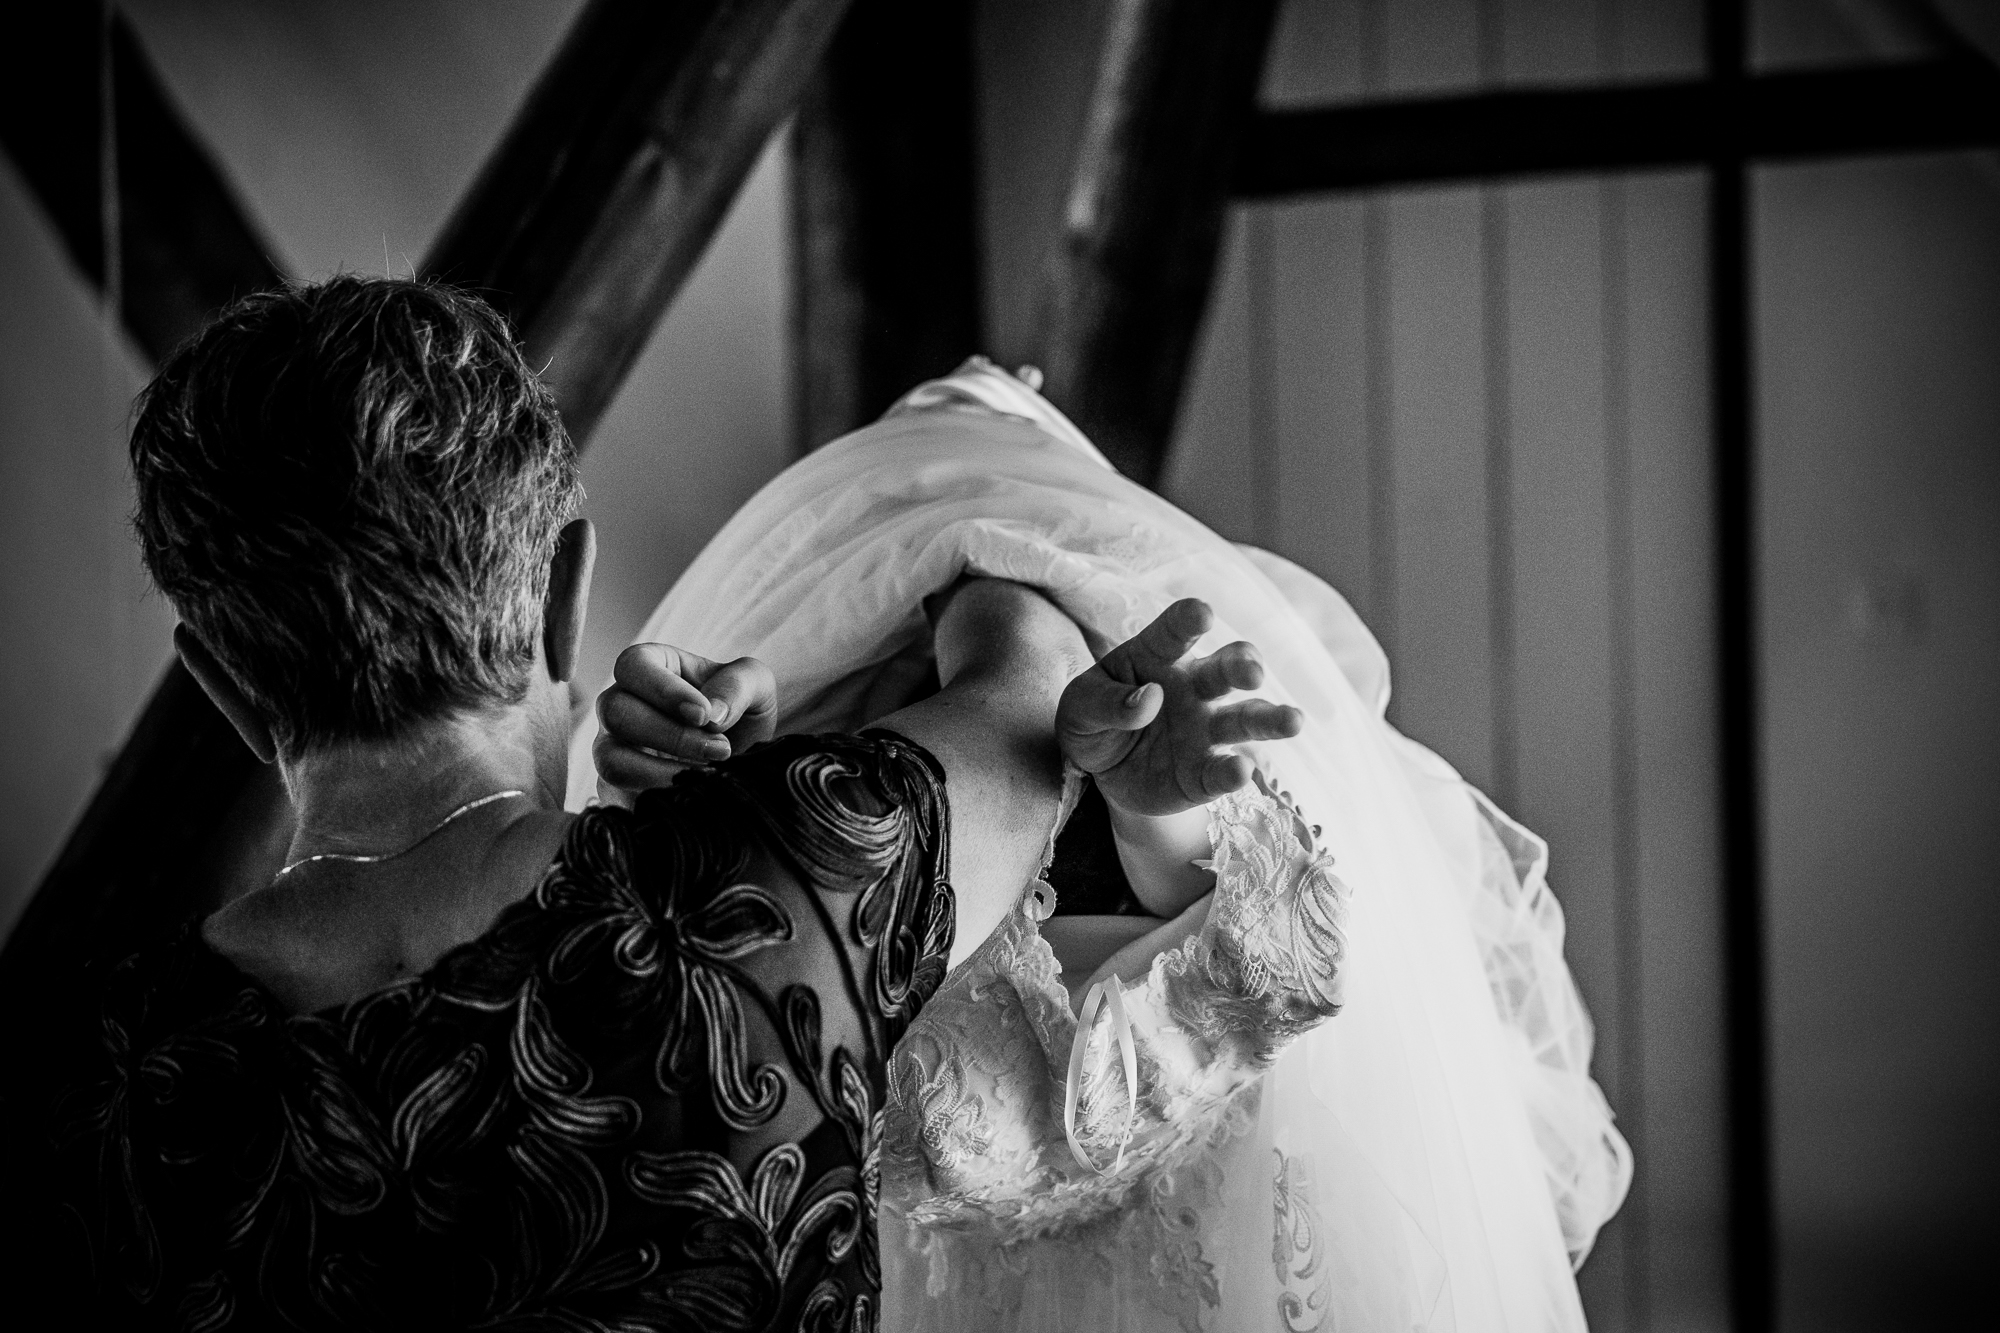 Trouwen in Friesland. Het aankleden van de bruid. Zwartwit trouwreportage door huwelijksfotograaf Nickie Fotografie uit Dokkum.